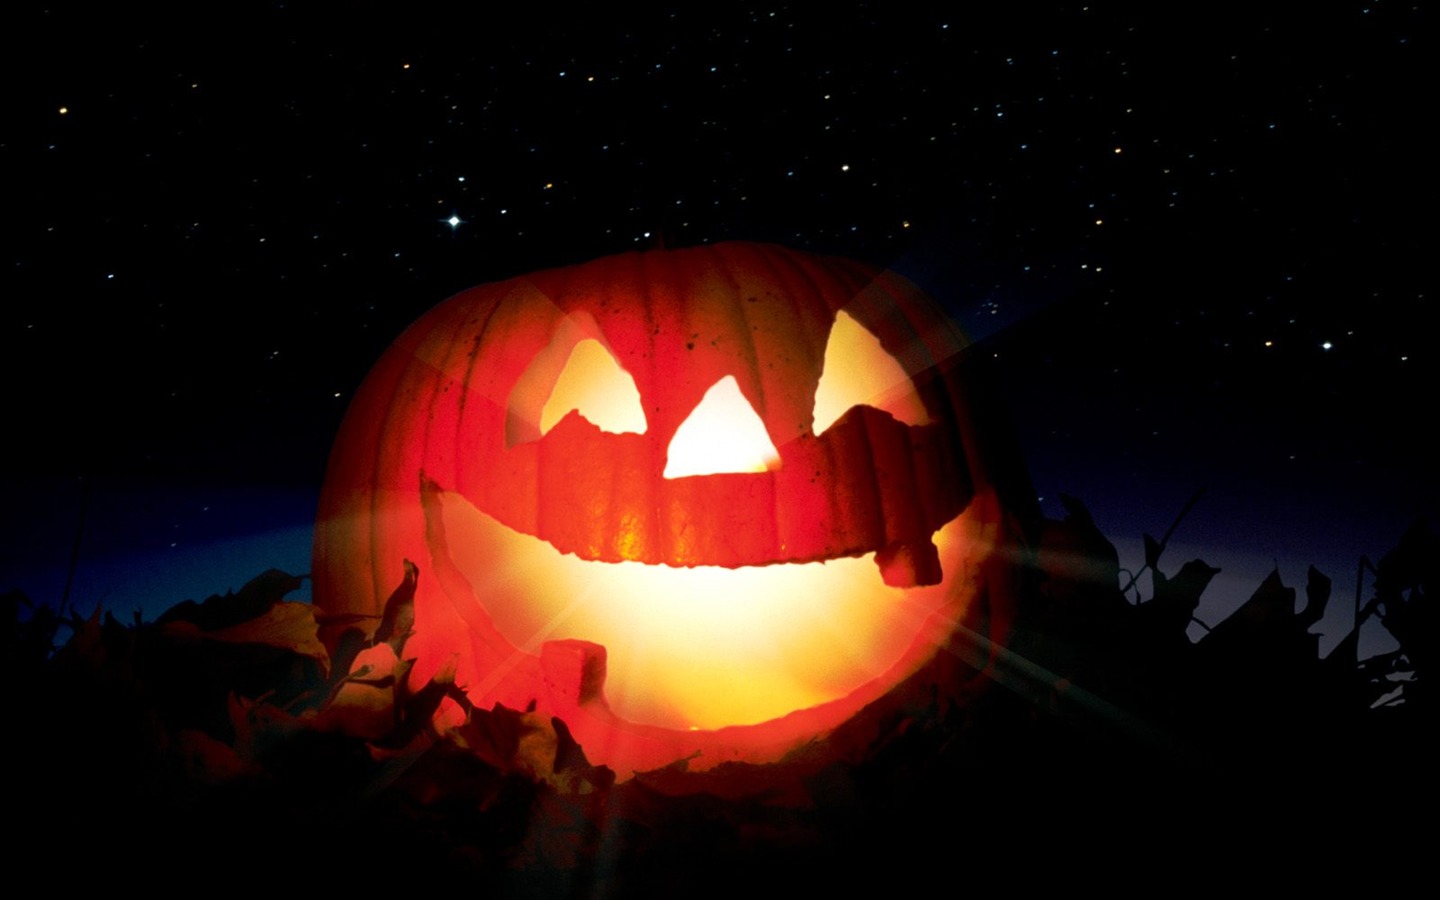 Fondos de Halloween temáticos (1) #10 - 1440x900